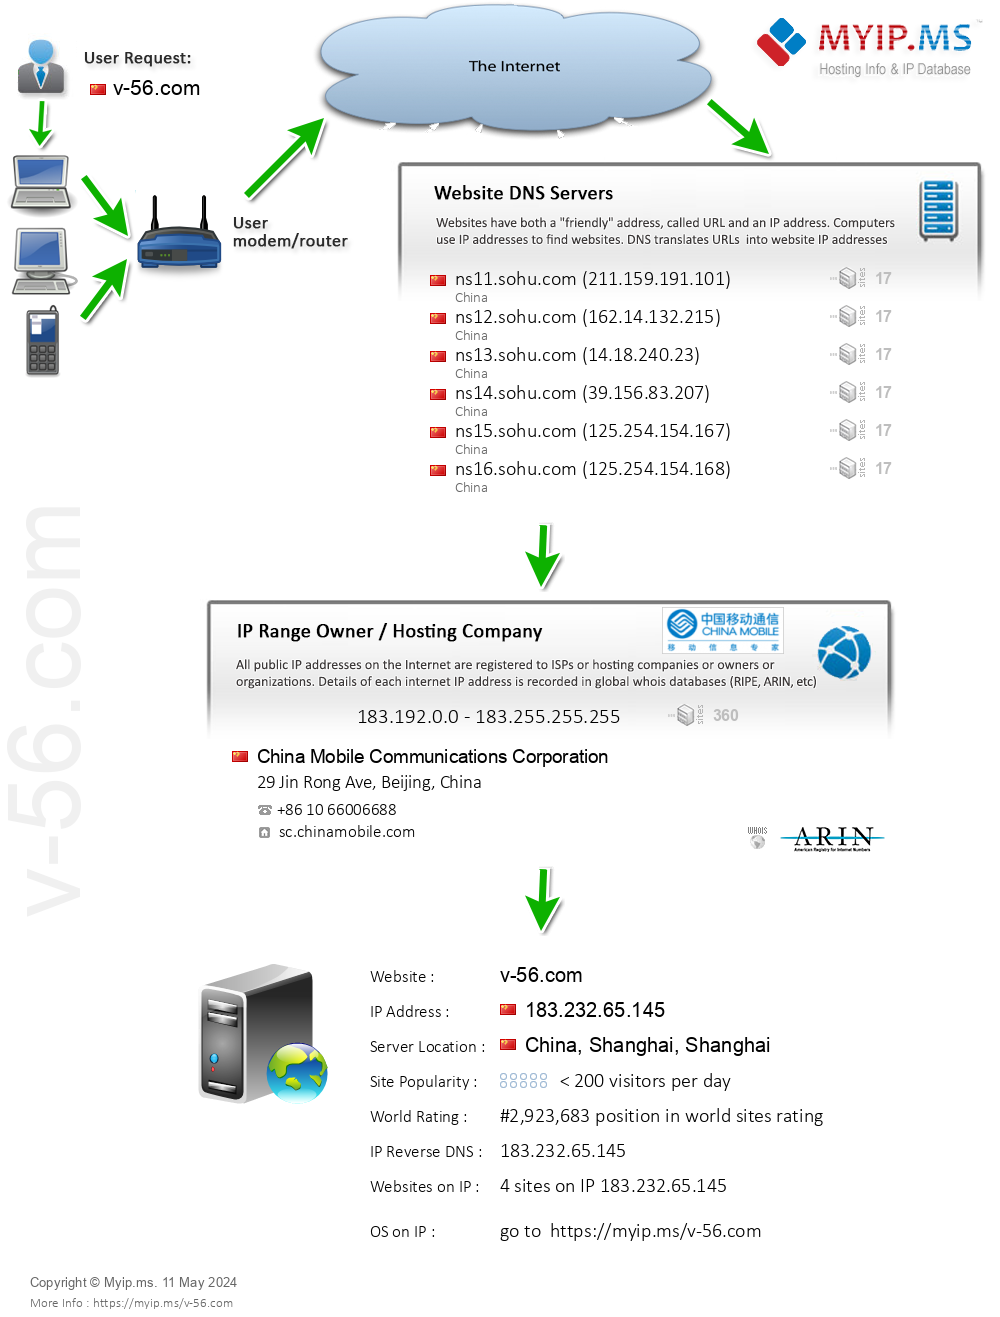 V-56.com - Website Hosting Visual IP Diagram